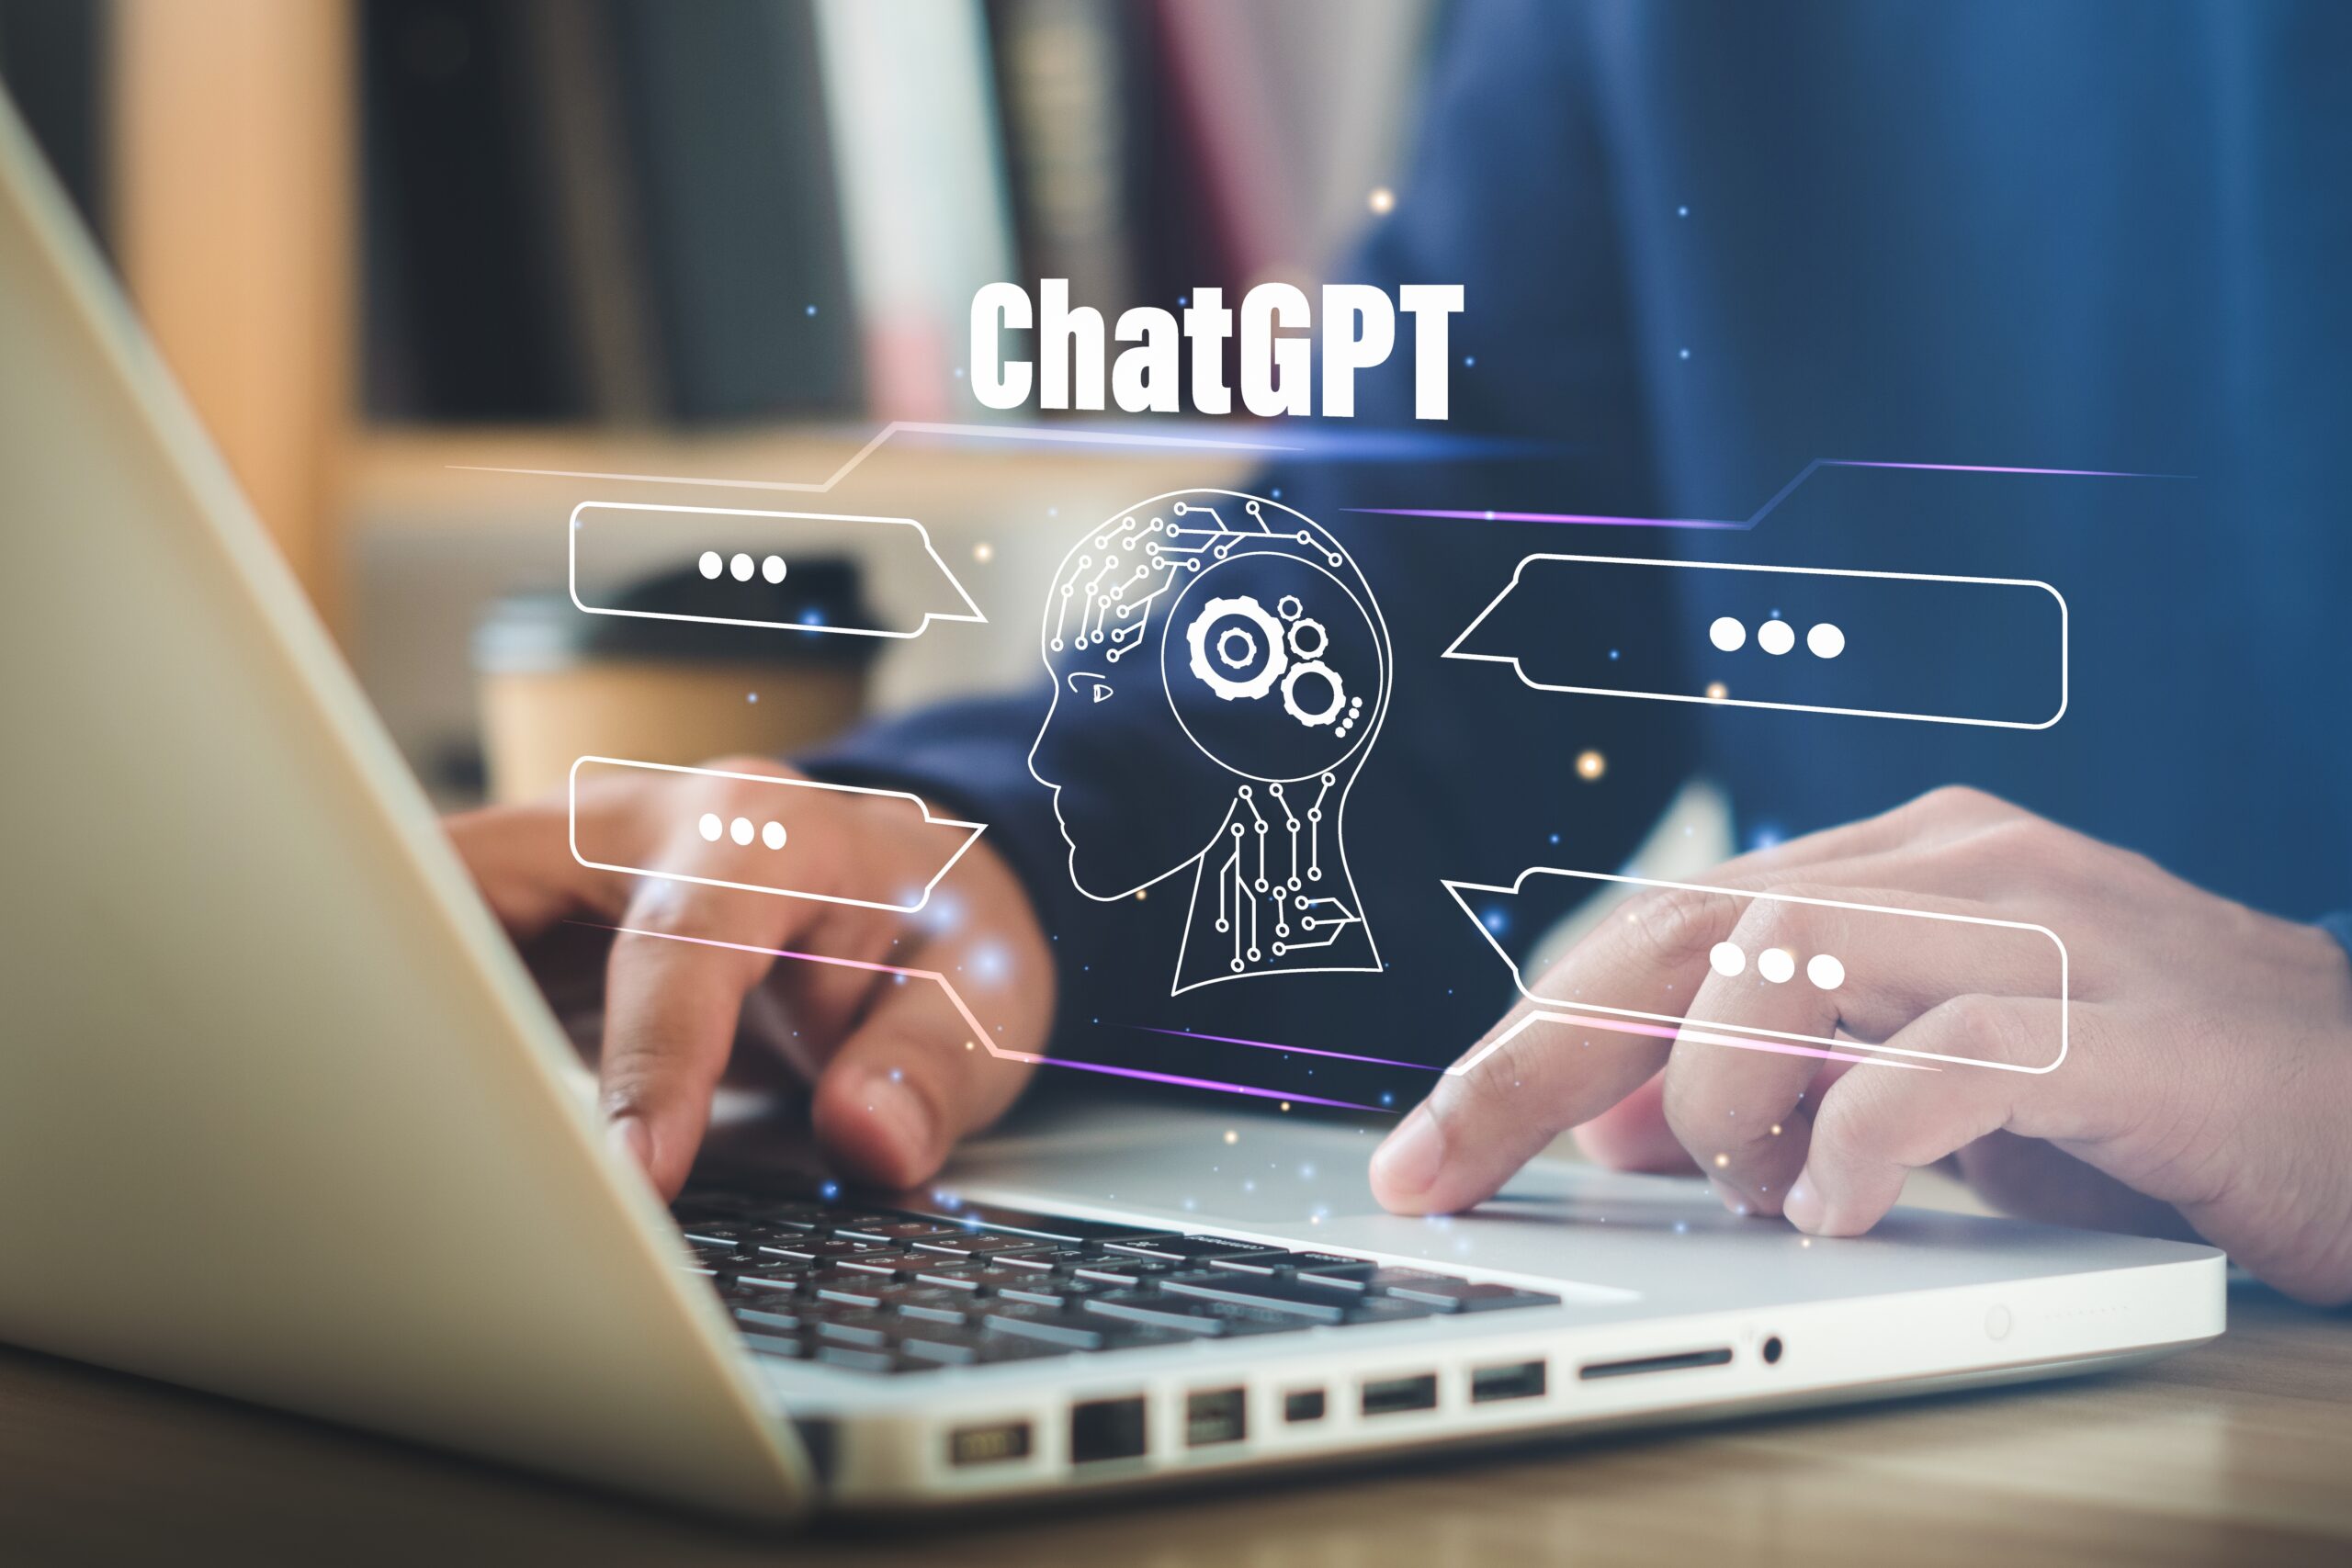 Universidades contam com auxílio de softwares para detectar uso do ChatGPT